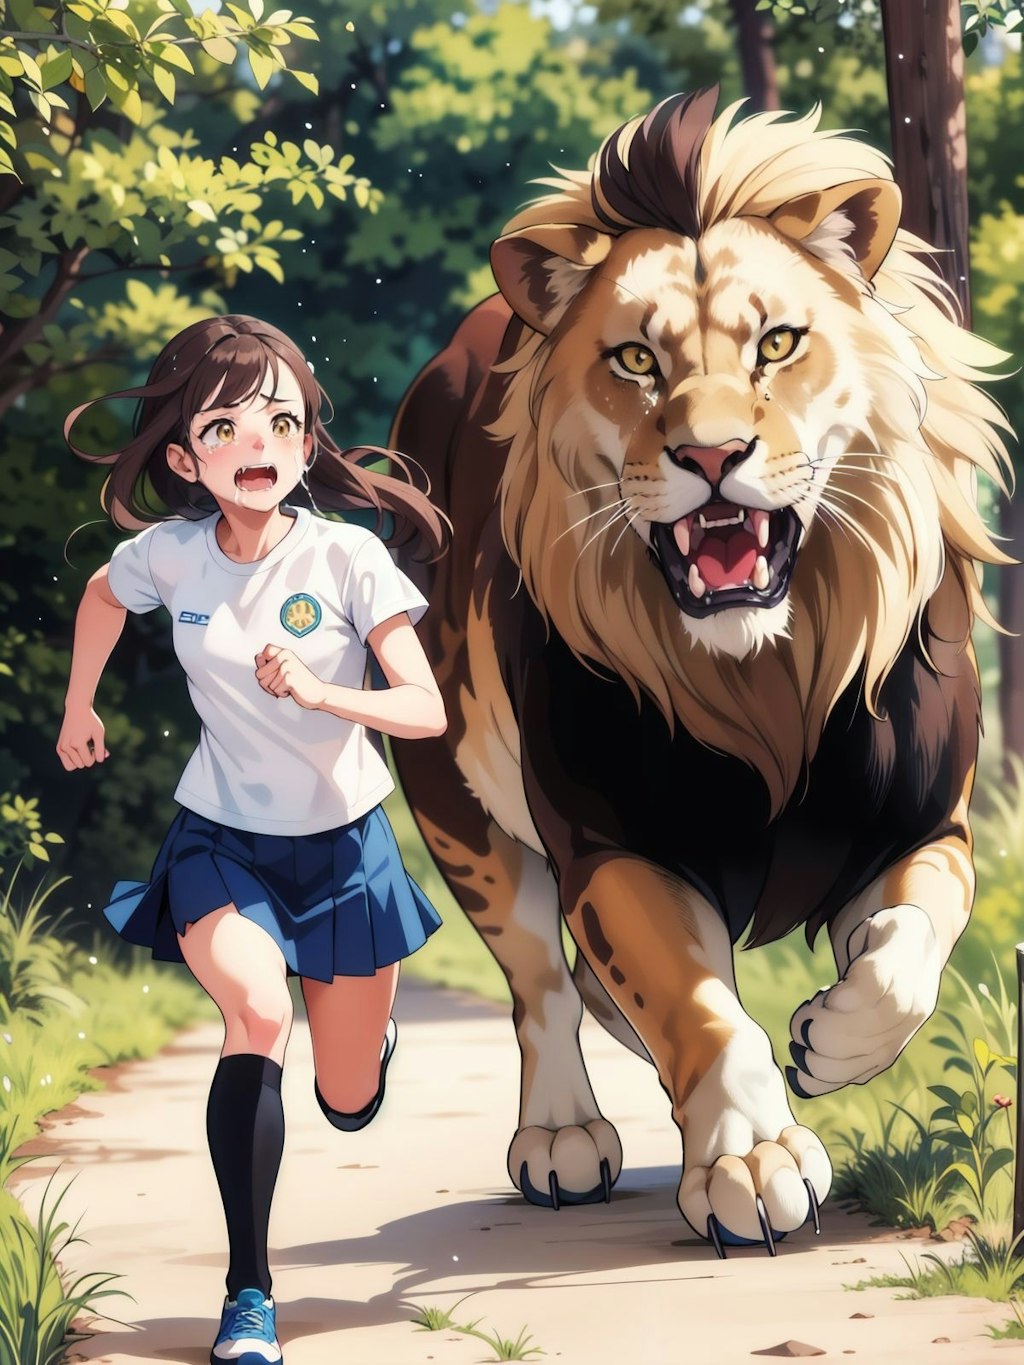 ライオンから逃げる女の子